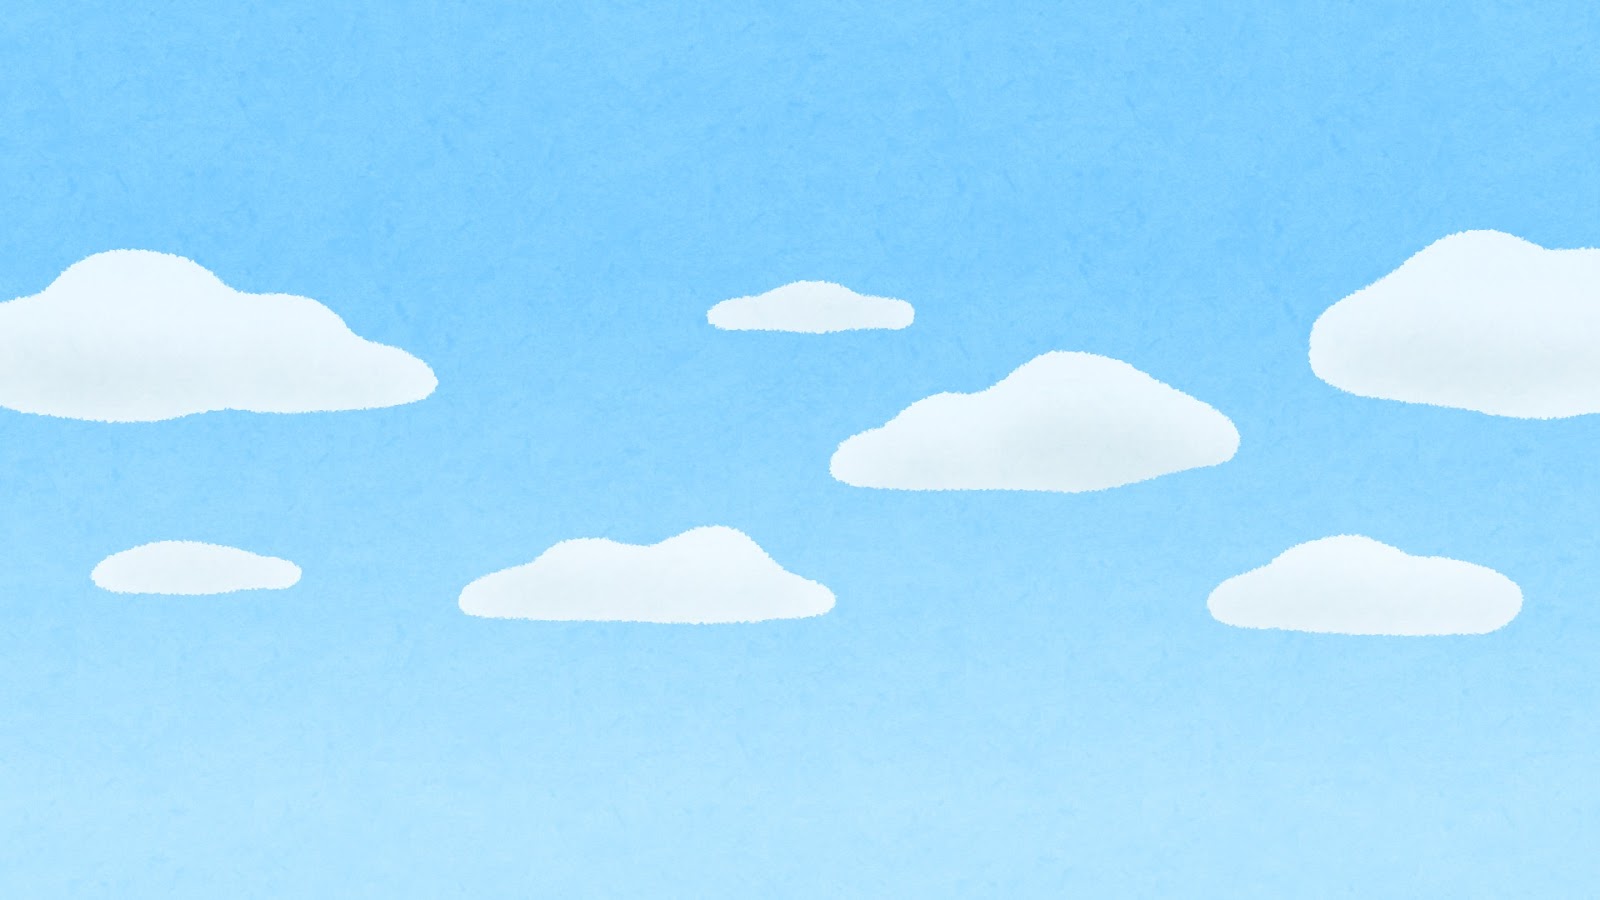 無料イラスト かわいいフリー素材集 雲が浮かぶ青空のイラスト 背景